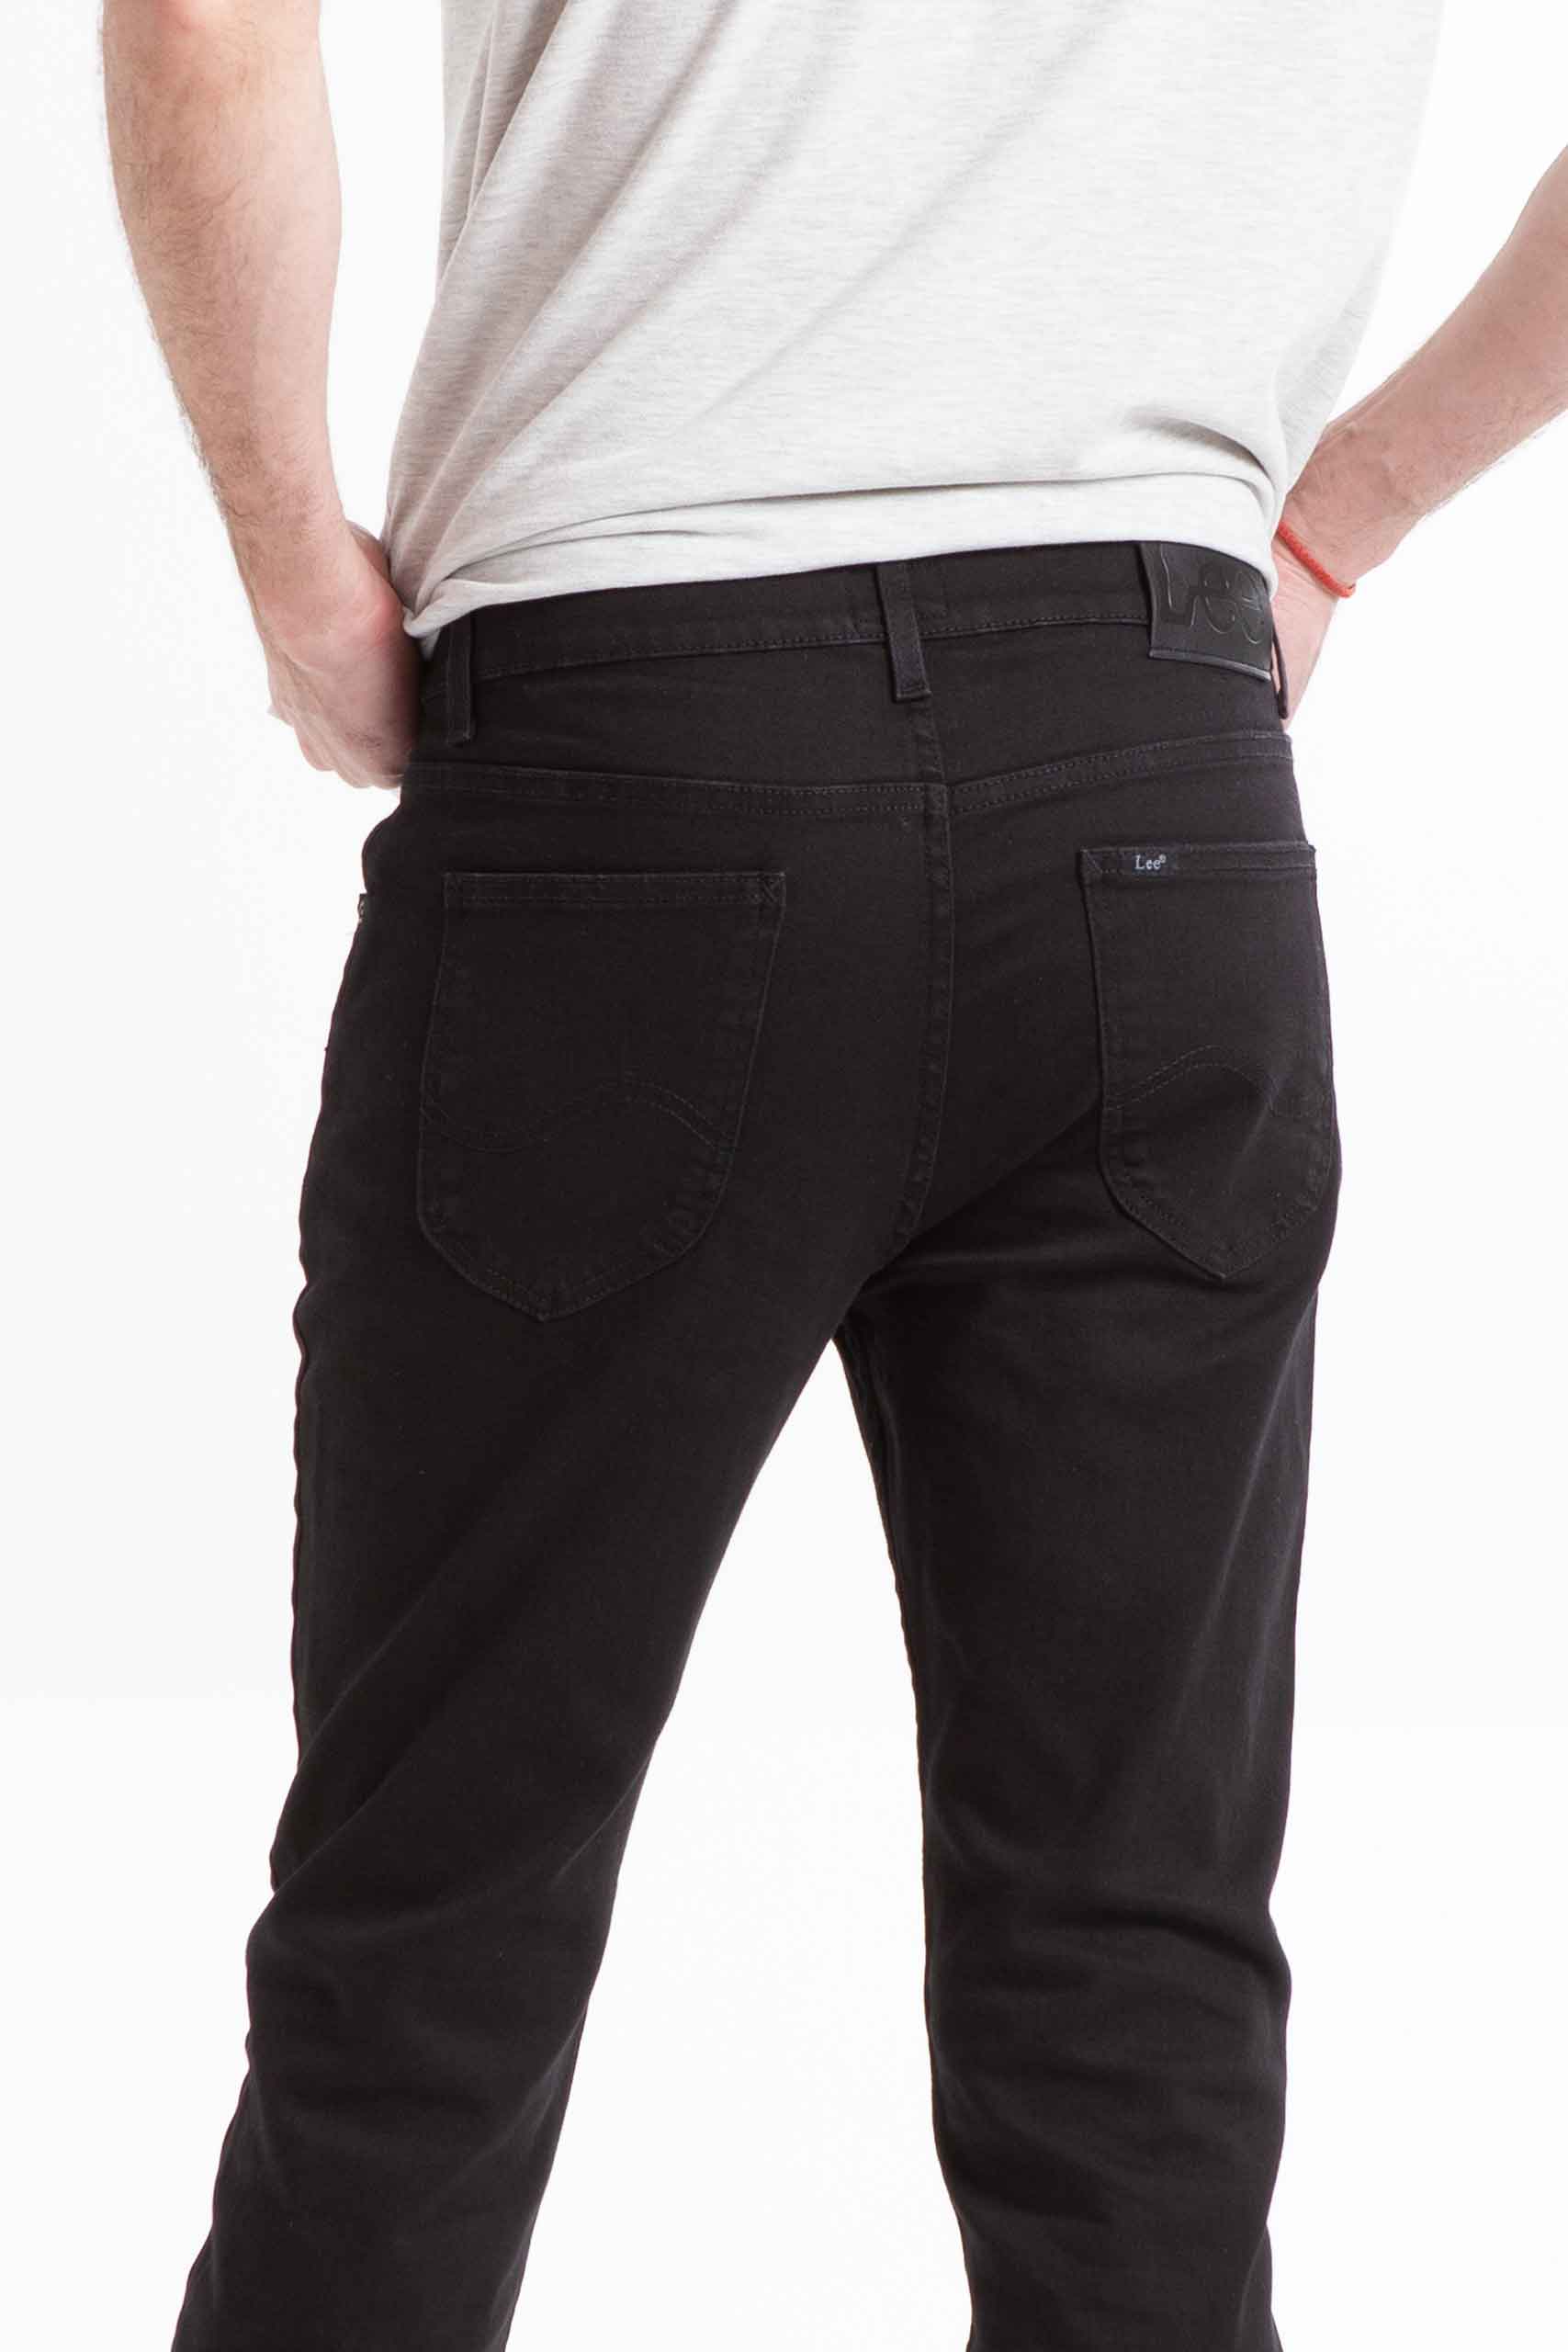 Vista posterior de jean de color negro de marca lee